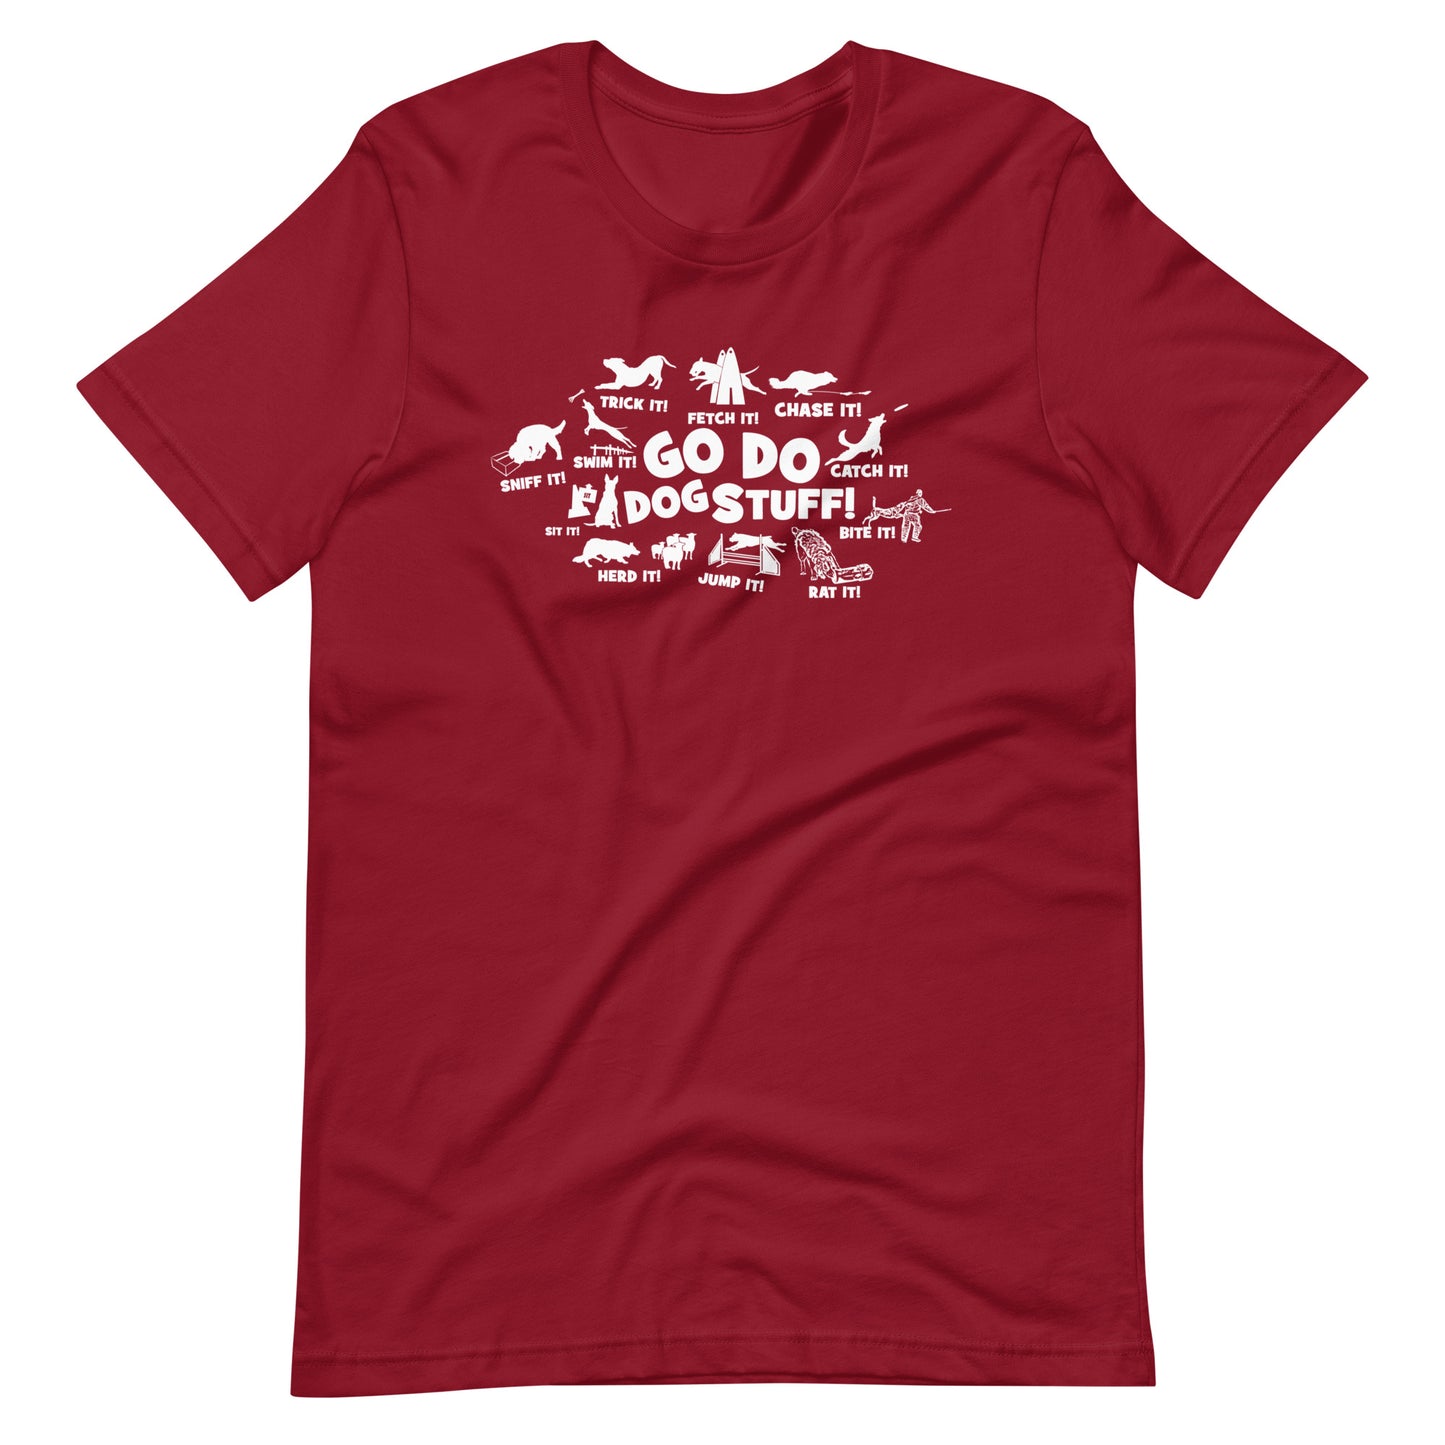 GO DO DOG STUFF _ ALL Unisex t-shirt